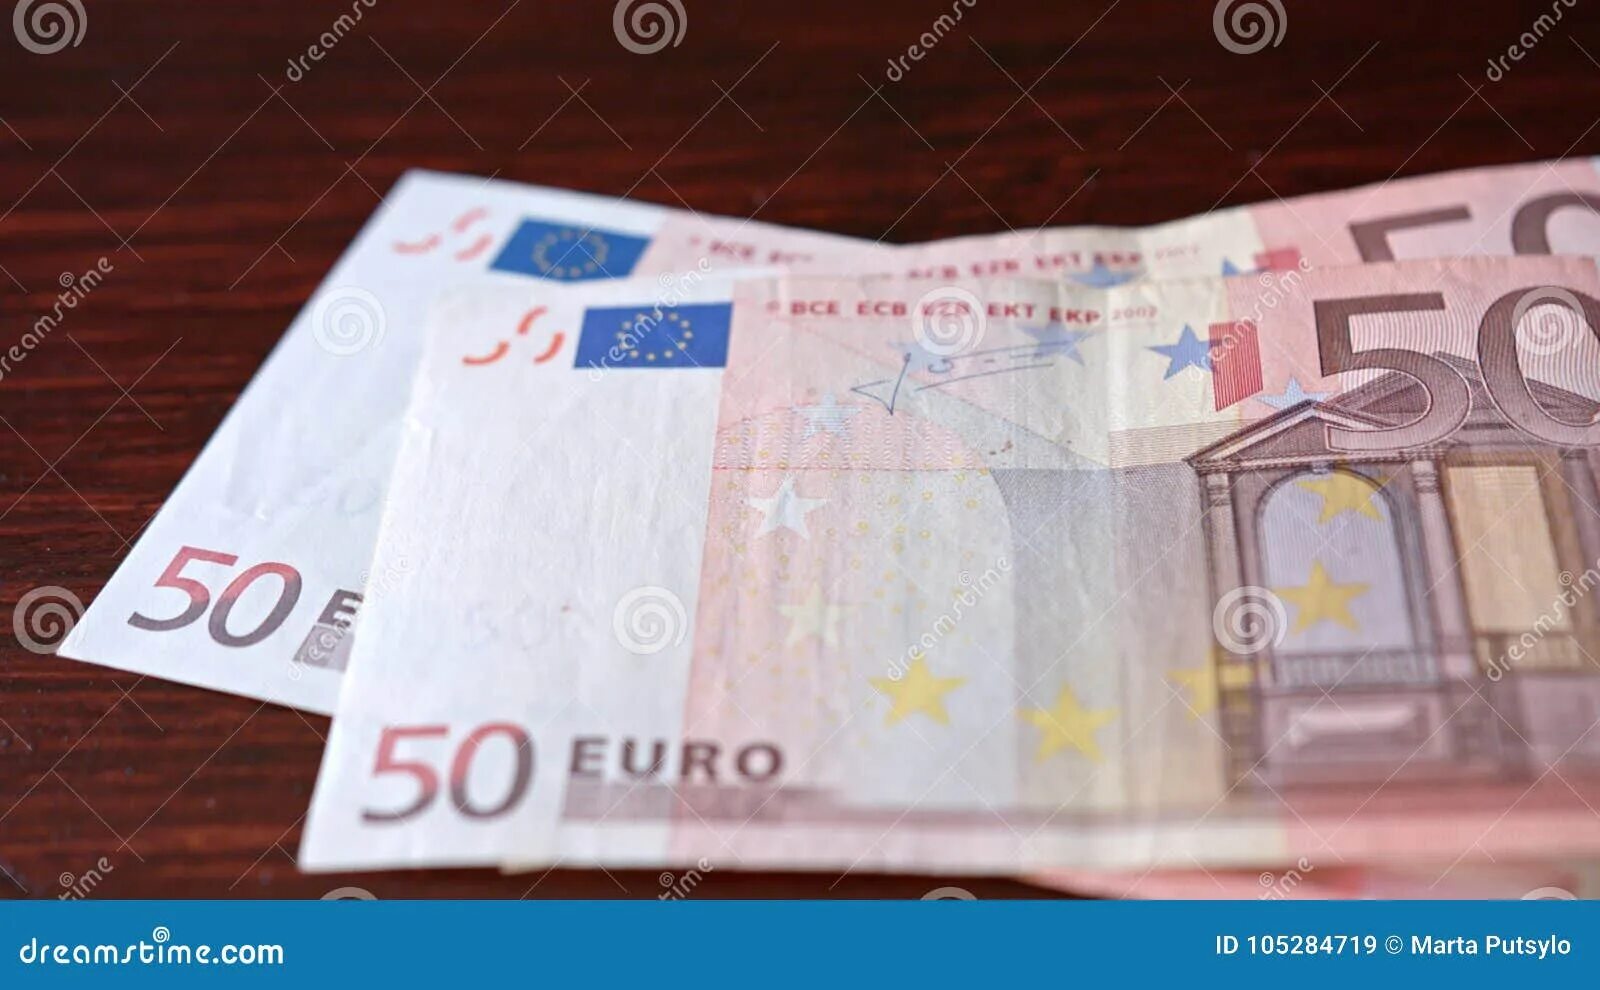 3800 евро сколько в рублях. 50 Евро в рублях. 50 Евро на столе. 50 Евро сколько. 50 Евро сейчас.